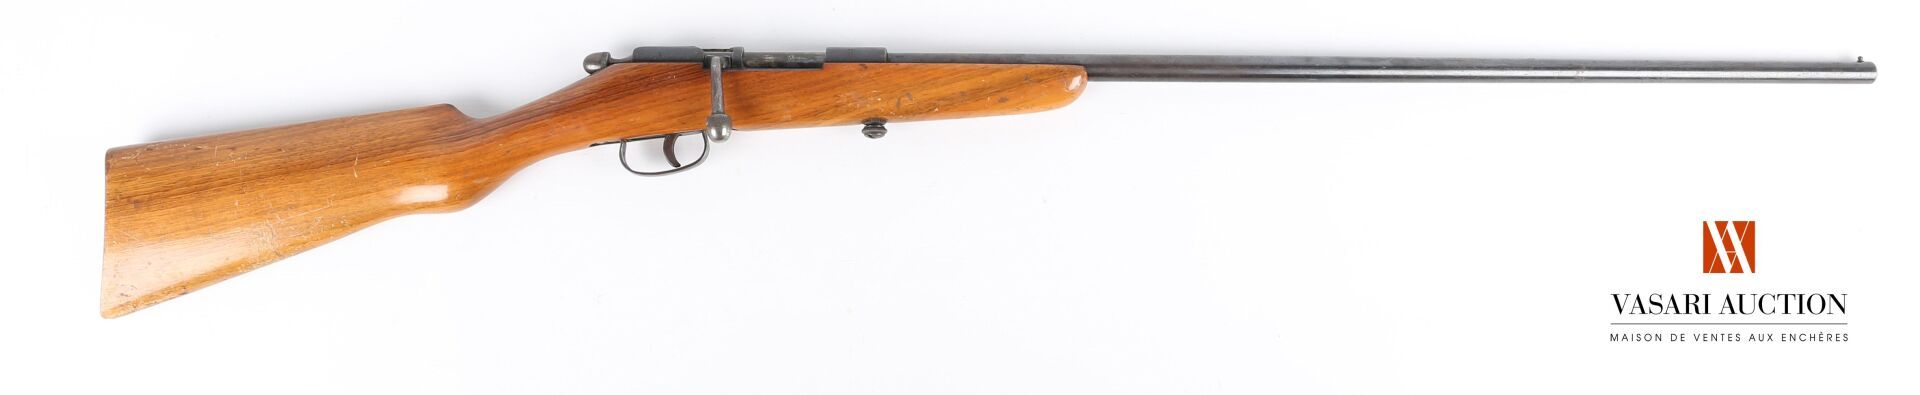 Null Carabine de jardin mono coup, modèle à verrou calibre 9 mm Flobert, canon d&hellip;